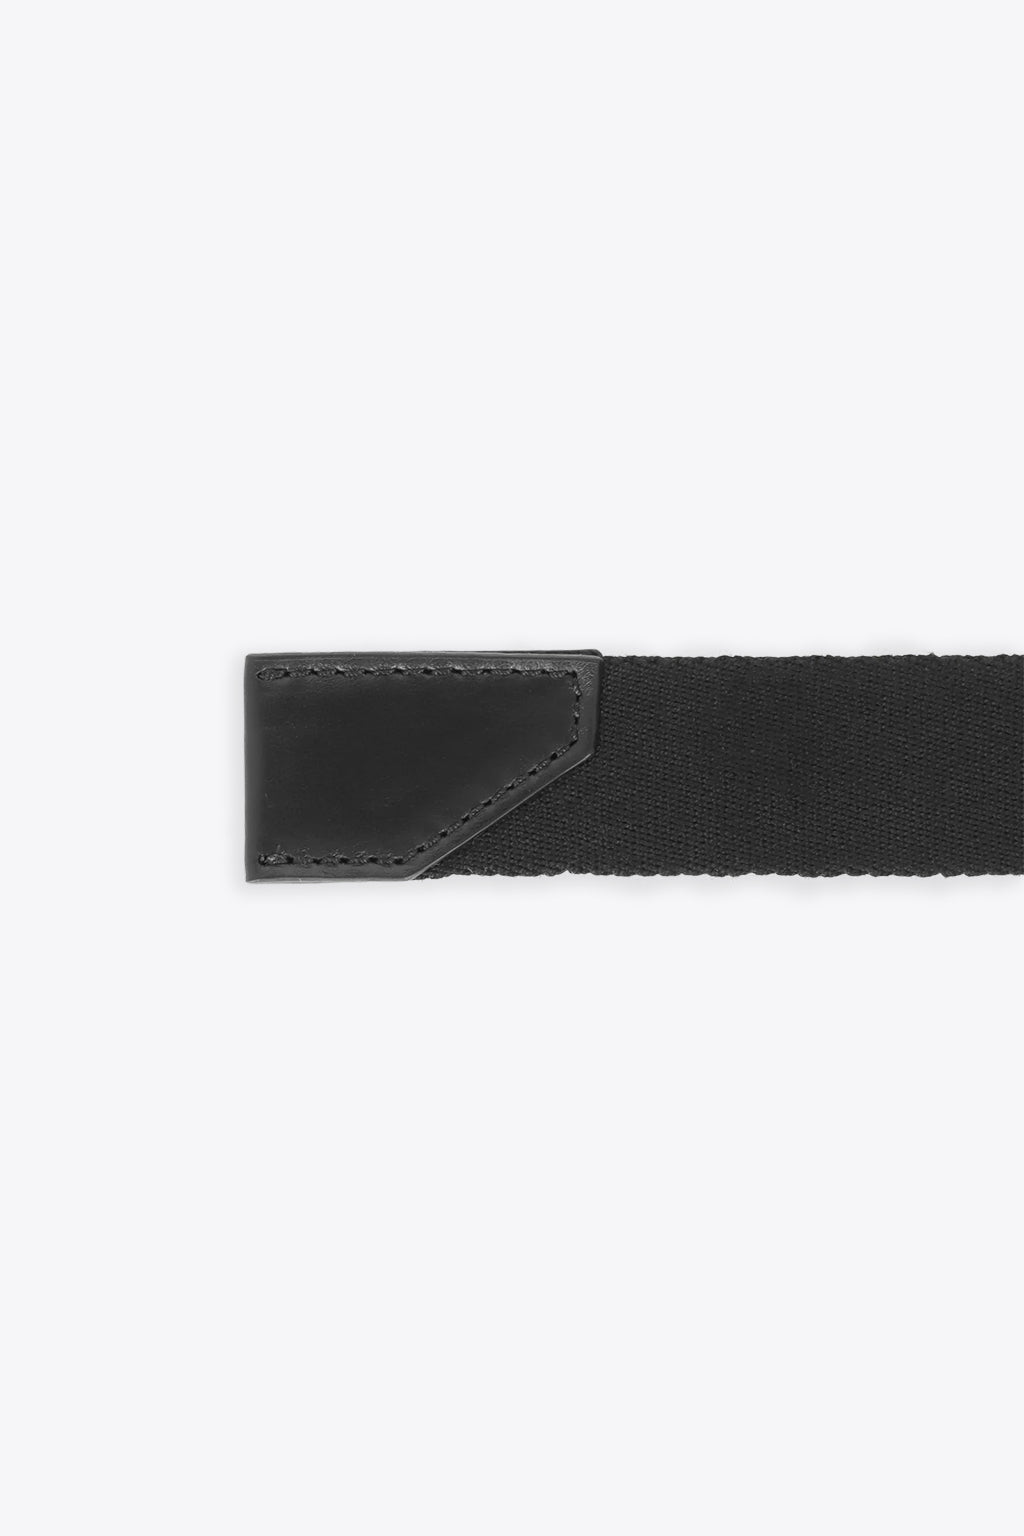 alt-image__Cintura-nera-in-tessuto-con-fibbia-in-metallo---Triber-belt